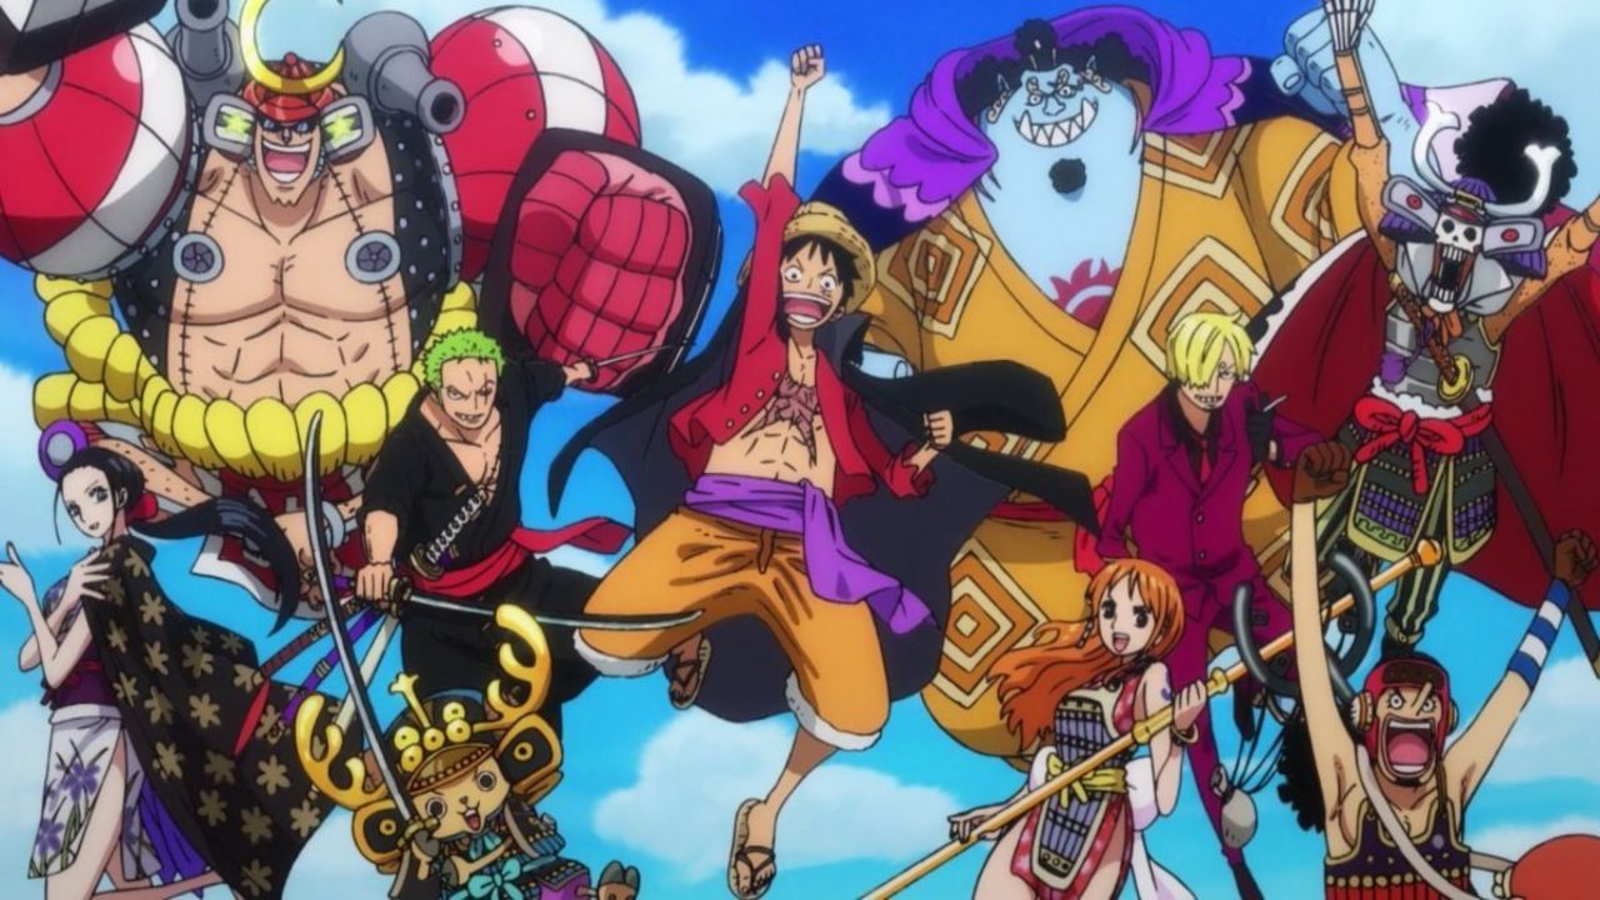 Ficou com vontade de ver o anime de One Piece? Fãs criaram versão